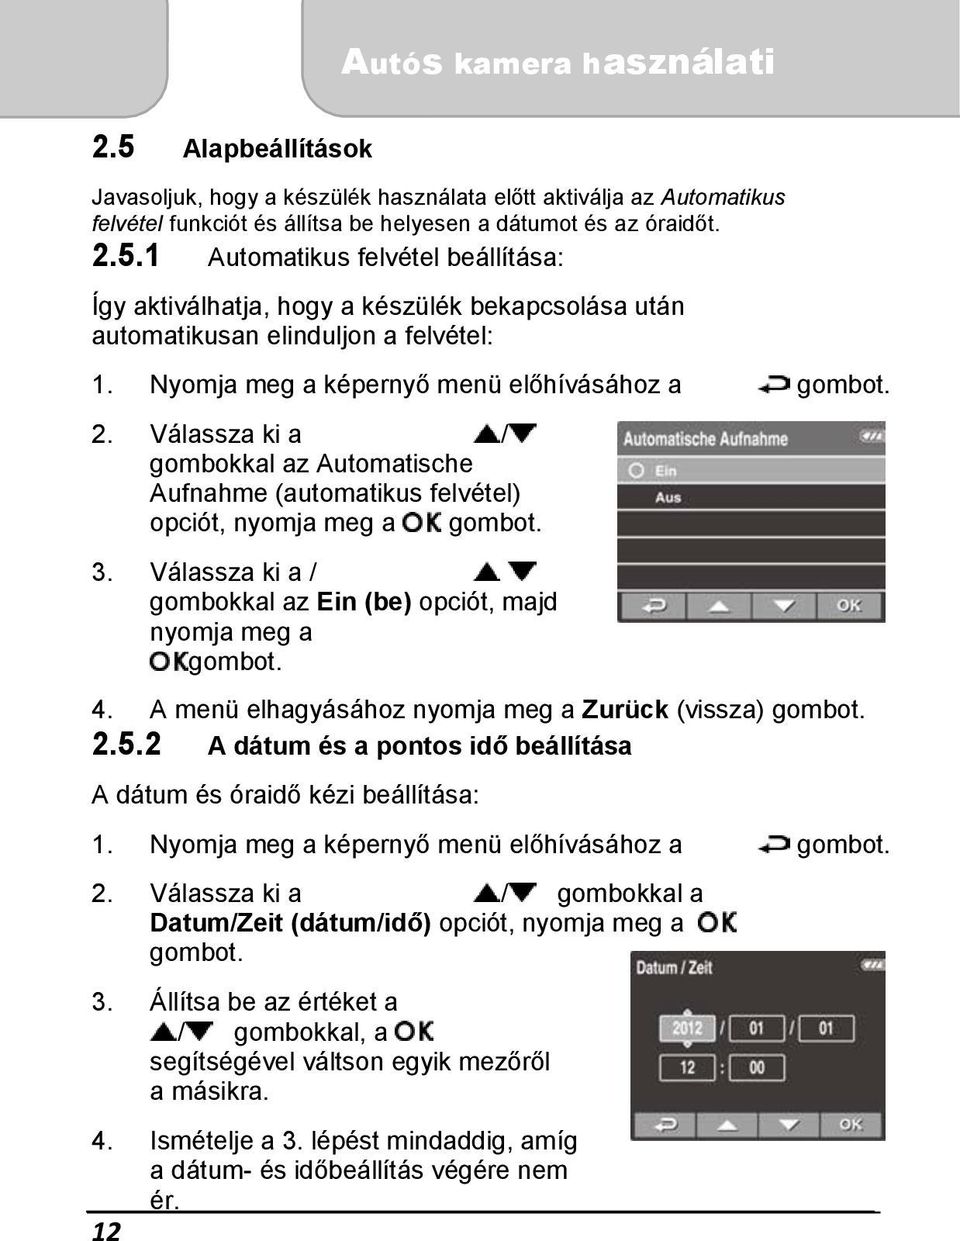 Használati útmutató. Autós kamera. -Magyar- - PDF Free Download